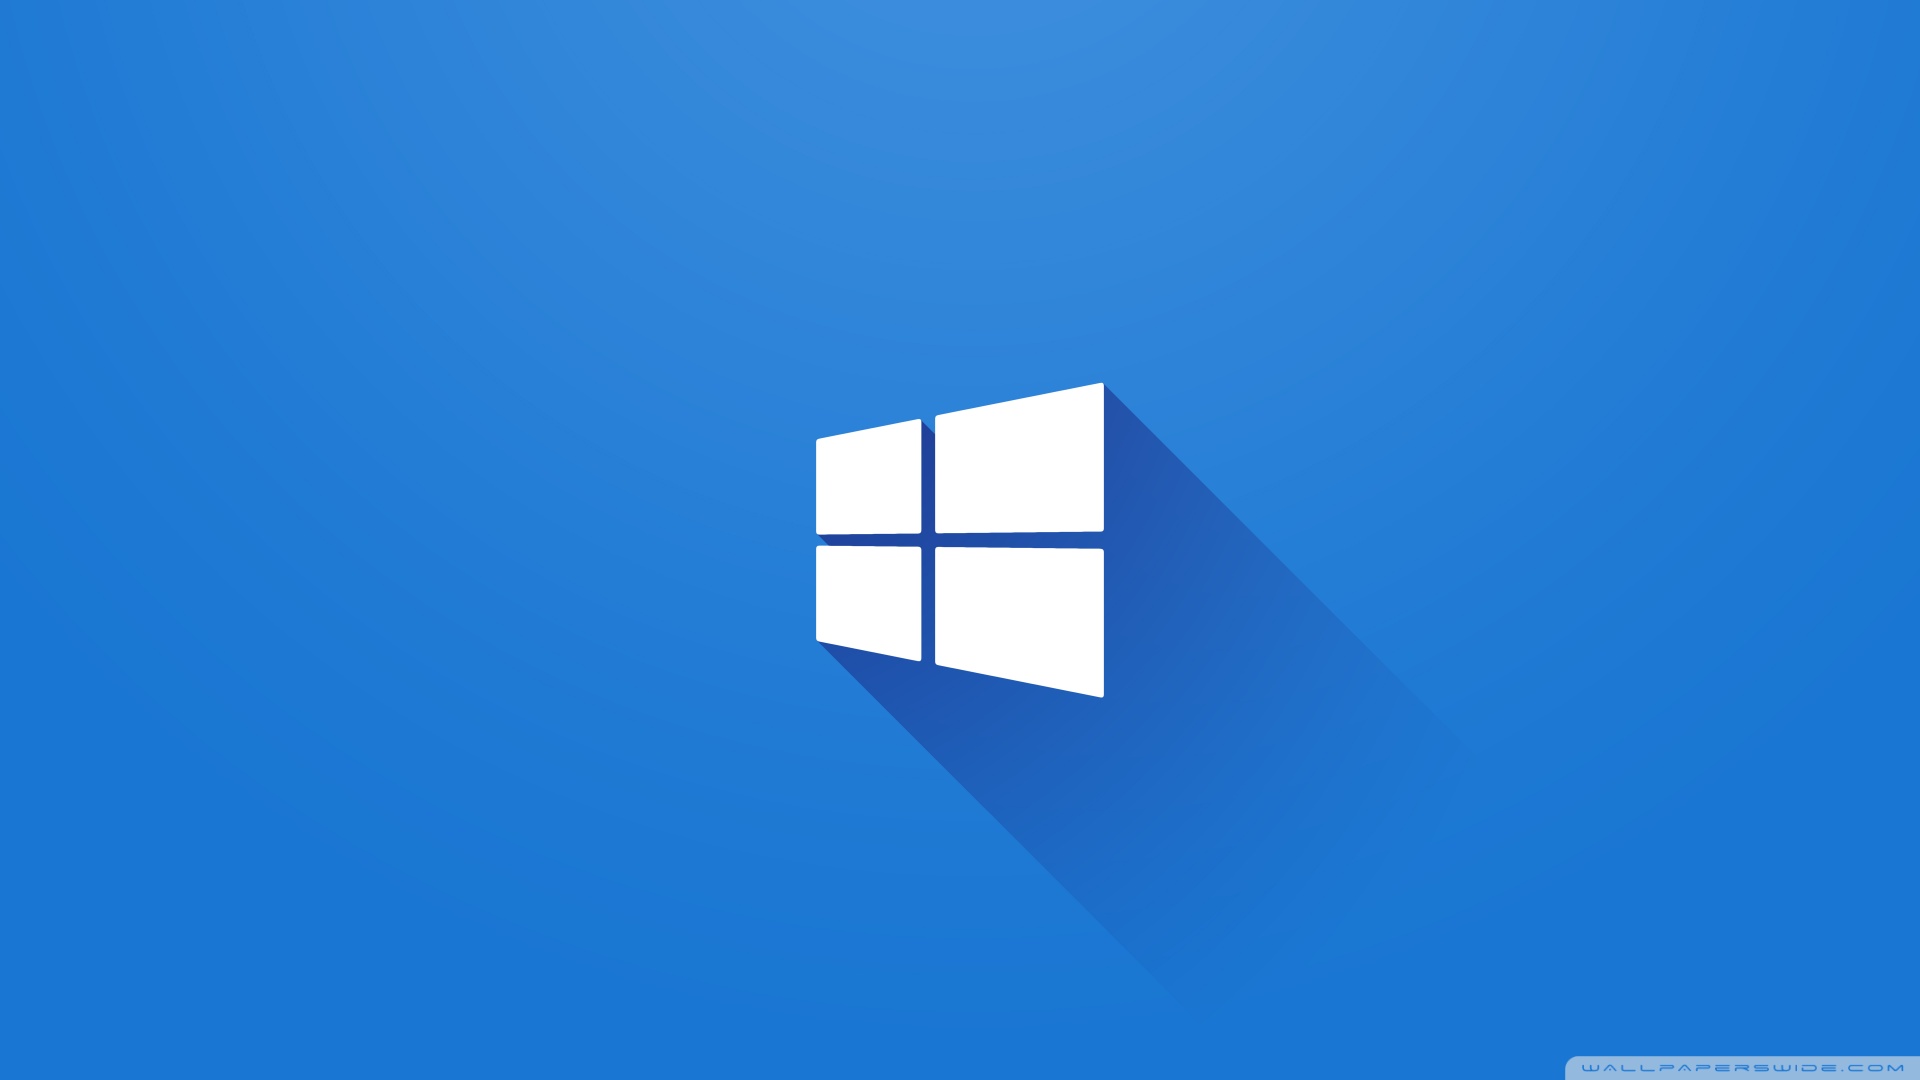 Fix windows 10 store: Nếu bạn đang gặp rắc rối với cửa hàng ứng dụng Windows 10, đừng lo lắng, vì chúng tôi đã có giải pháp cho bạn! Hãy thực hiện các bước đơn giản để sửa lỗi và trải nghiệm những ứng dụng tuyệt vời trên hệ điều hành này.